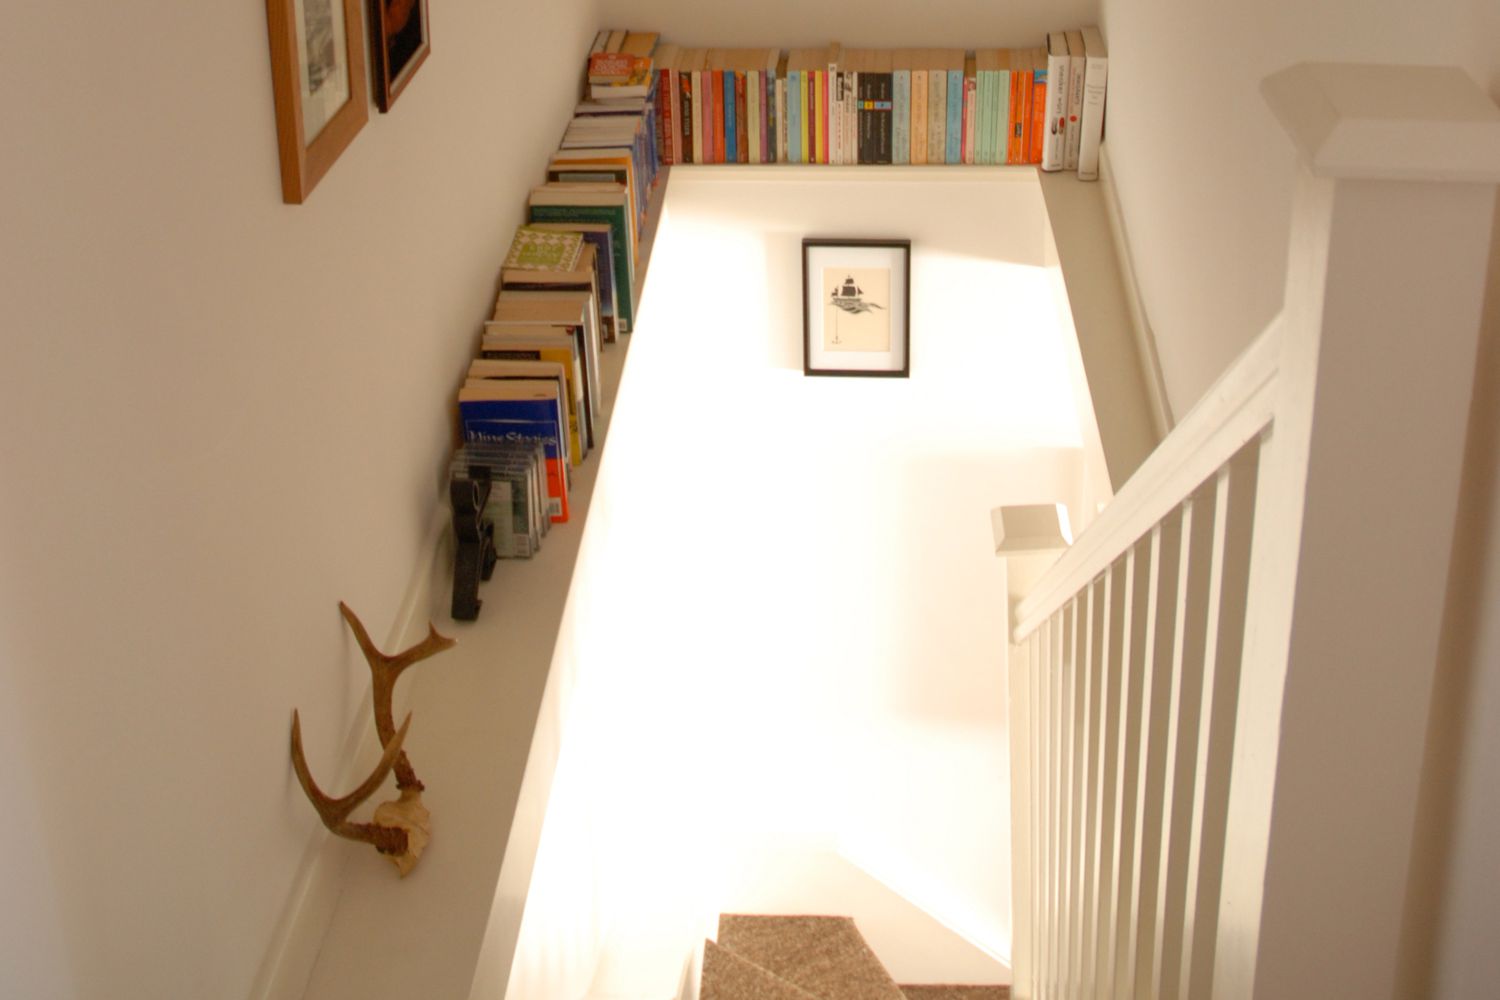 Libros almacenados sobre una escalera